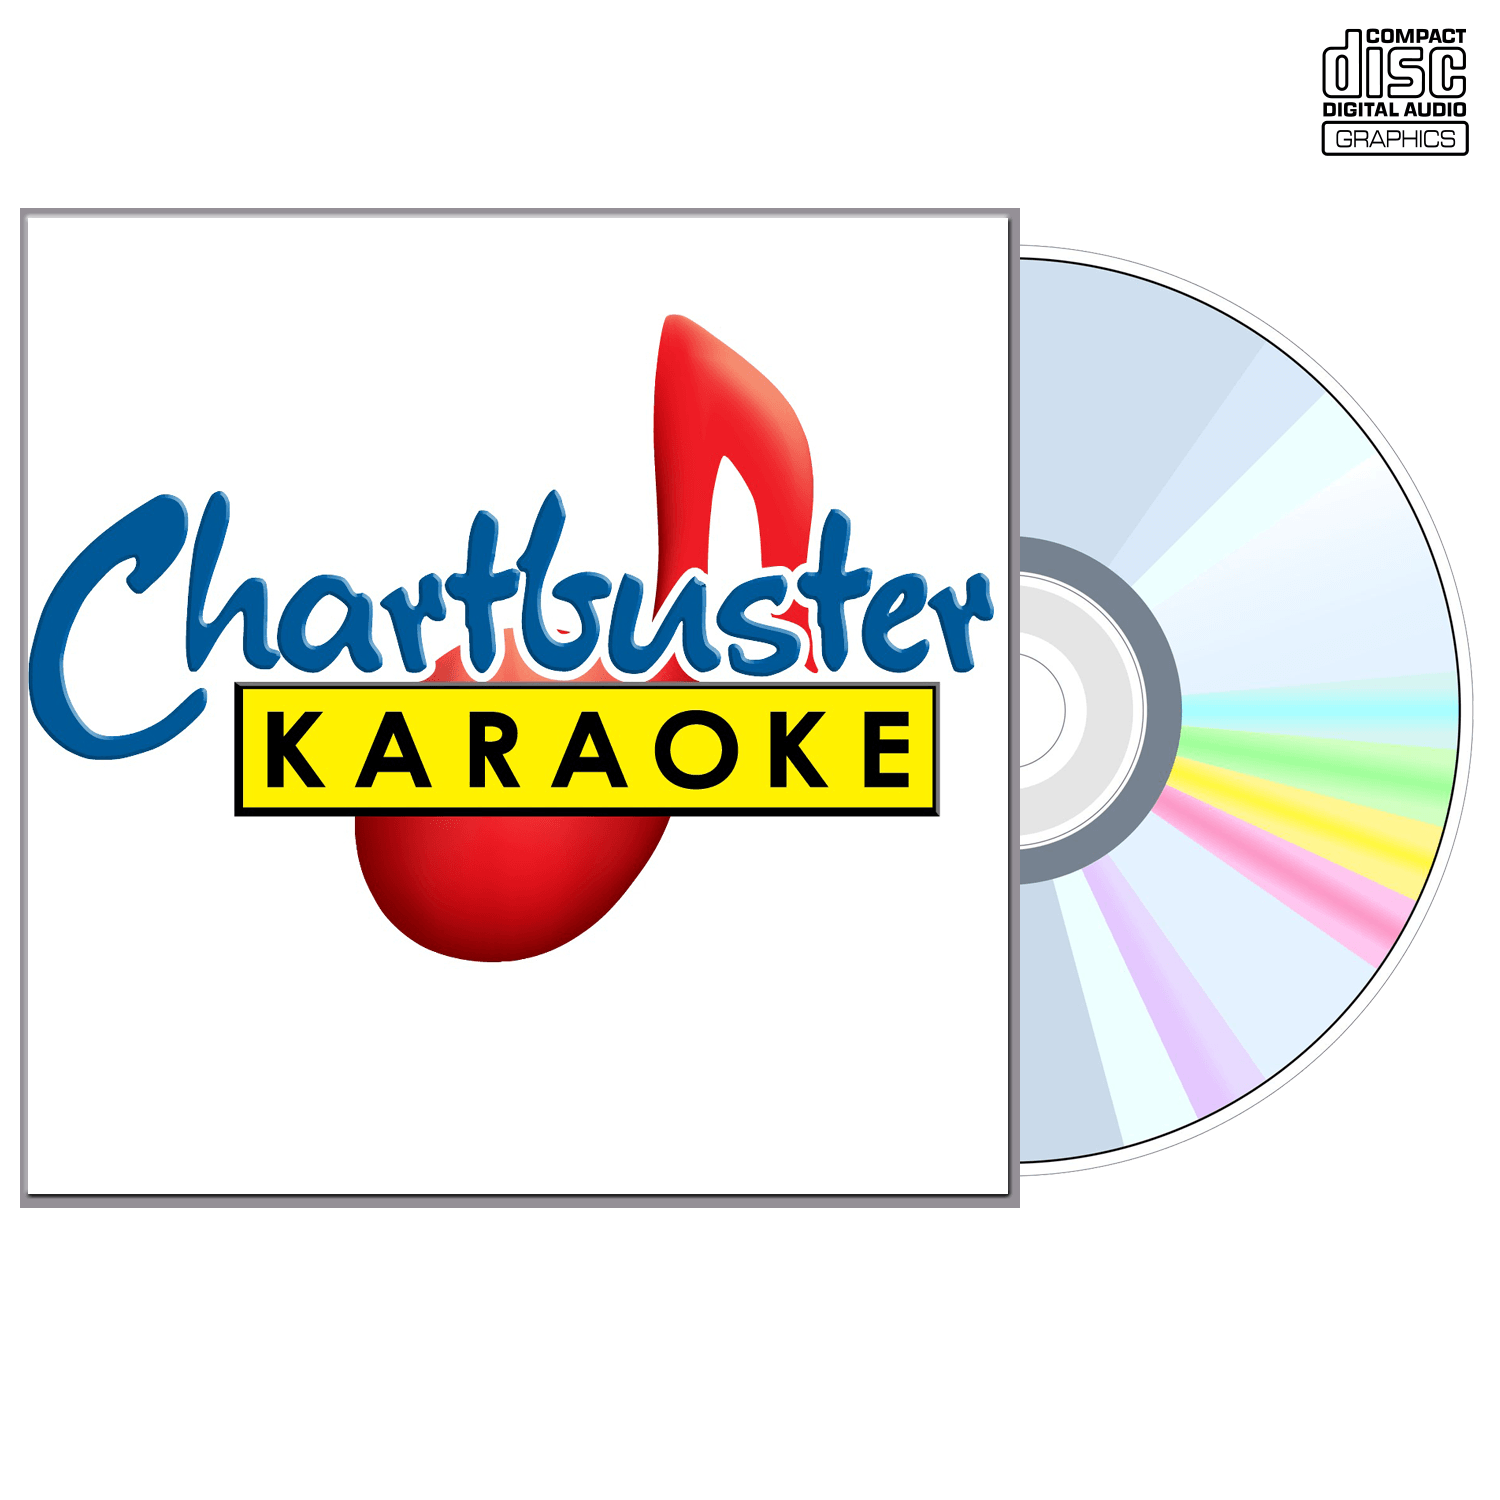 Killers - CD+G - Chartbuster Karaoke - Karaoke Home Entertainment